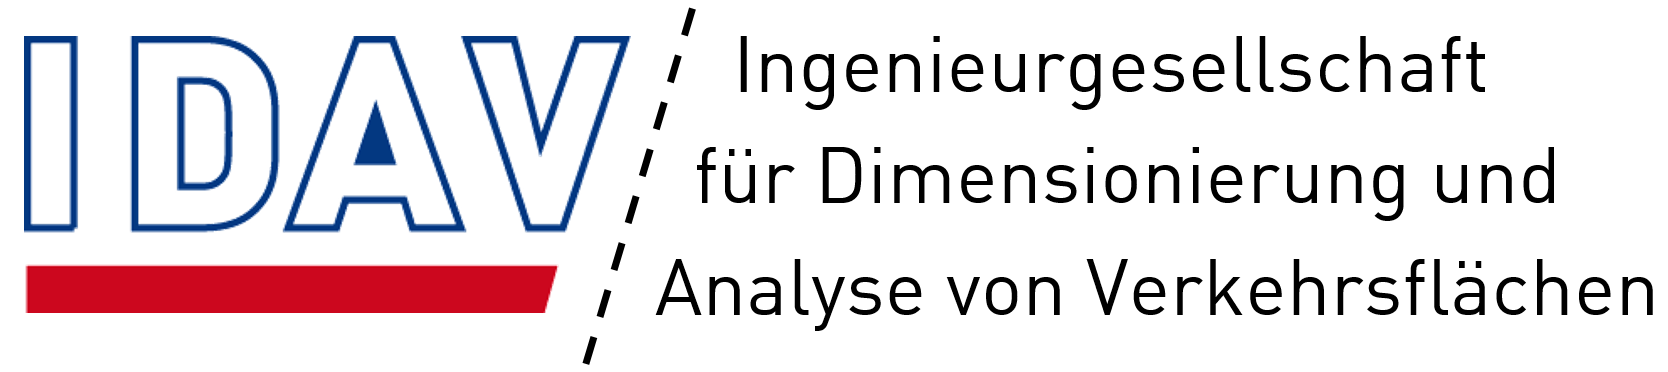 Logo IDAV